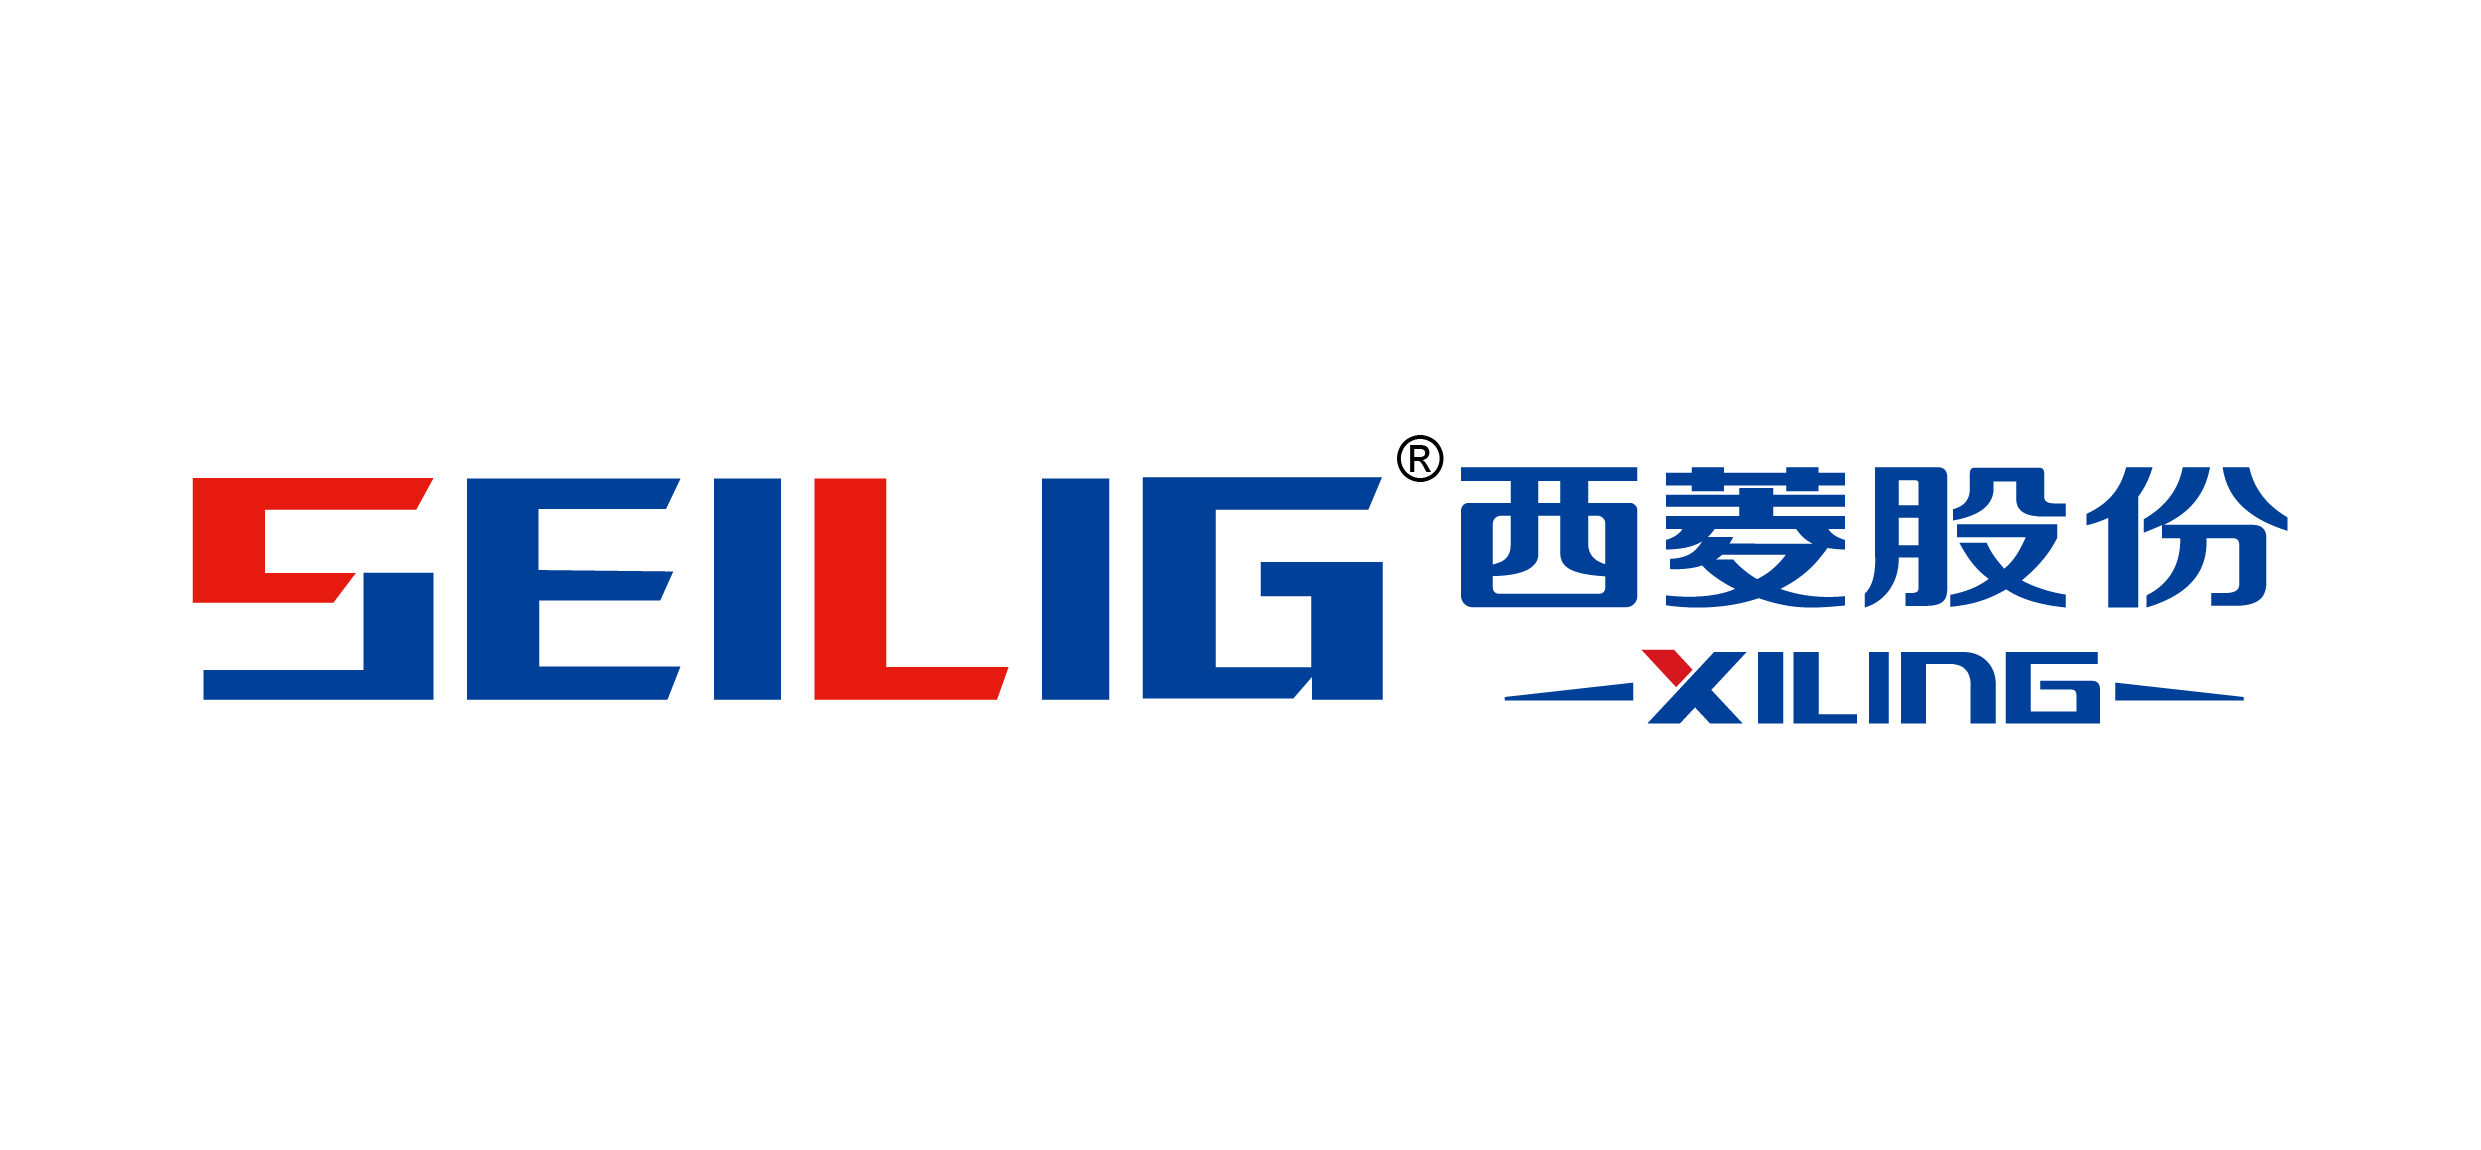 Zhejiang Xiling Co., Ltd.